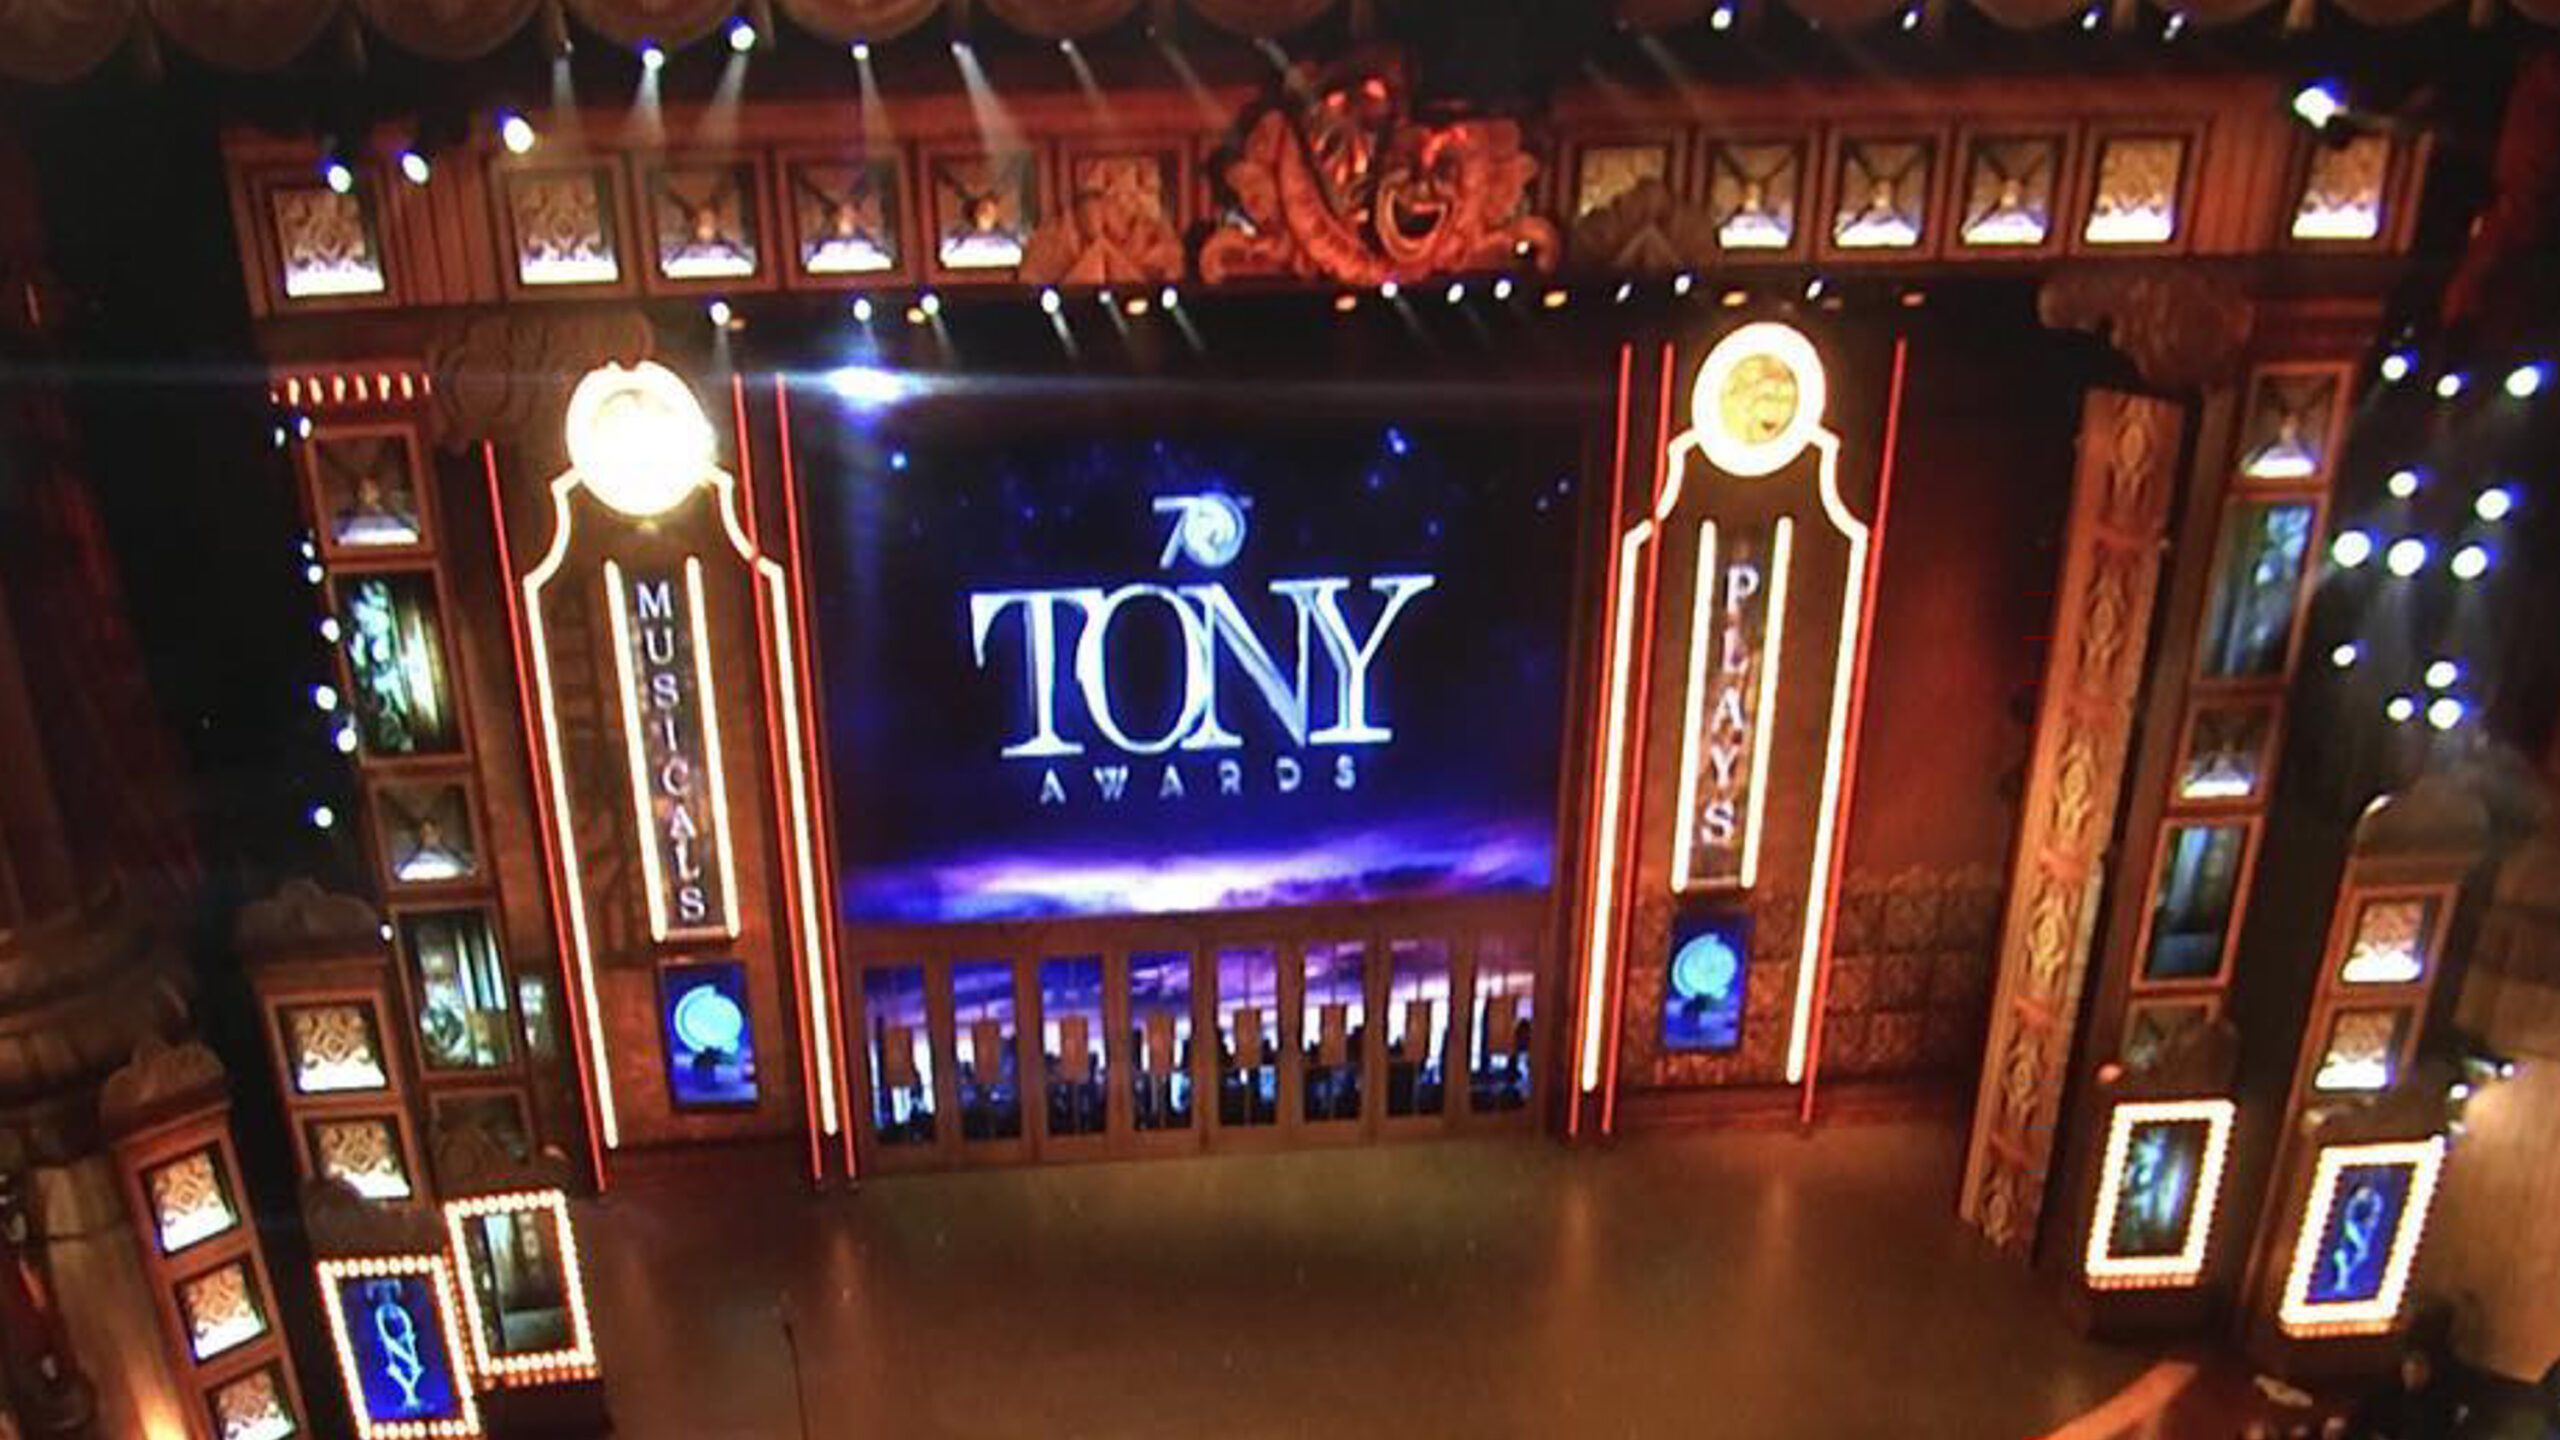 Tony Awards dedicates ceremony to Orlando victims